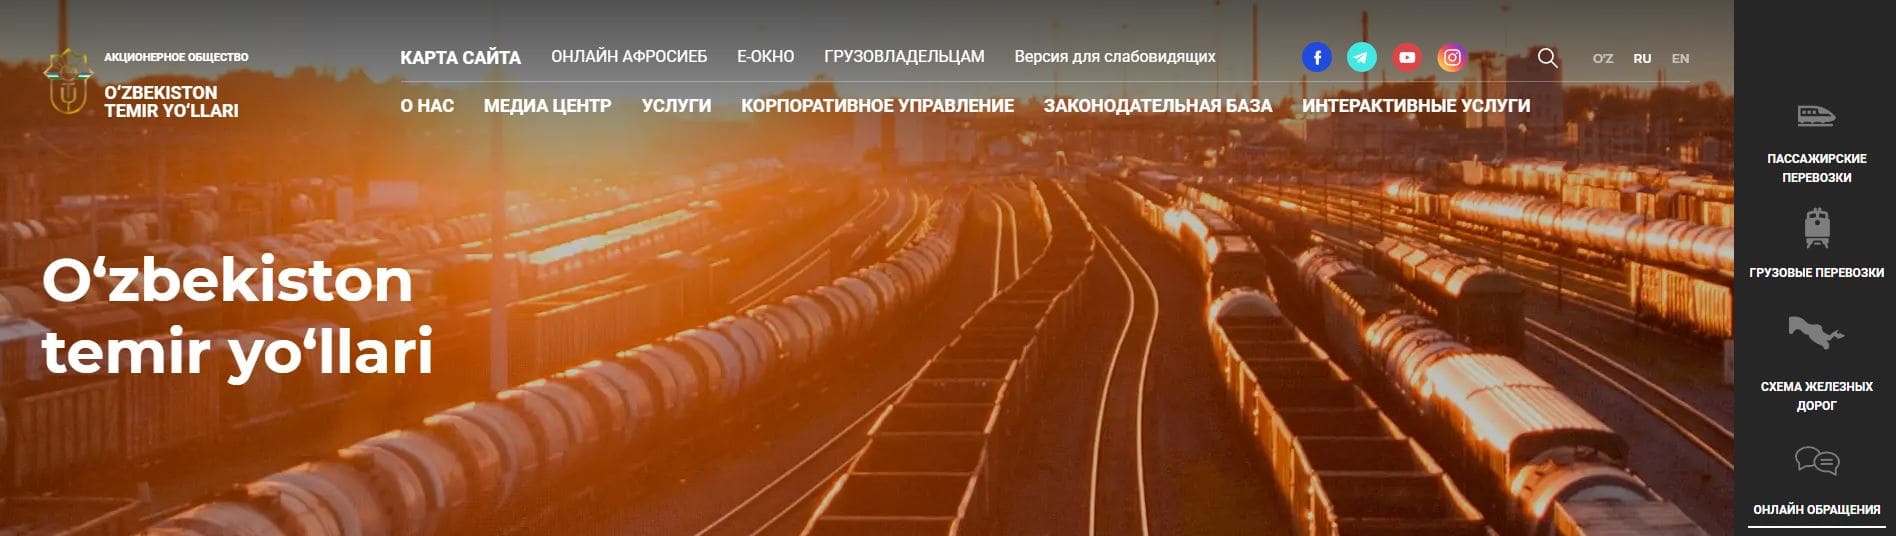 Узбекистанские железные дороги (railway.uz) O'zbekiston Temir Yo'llari